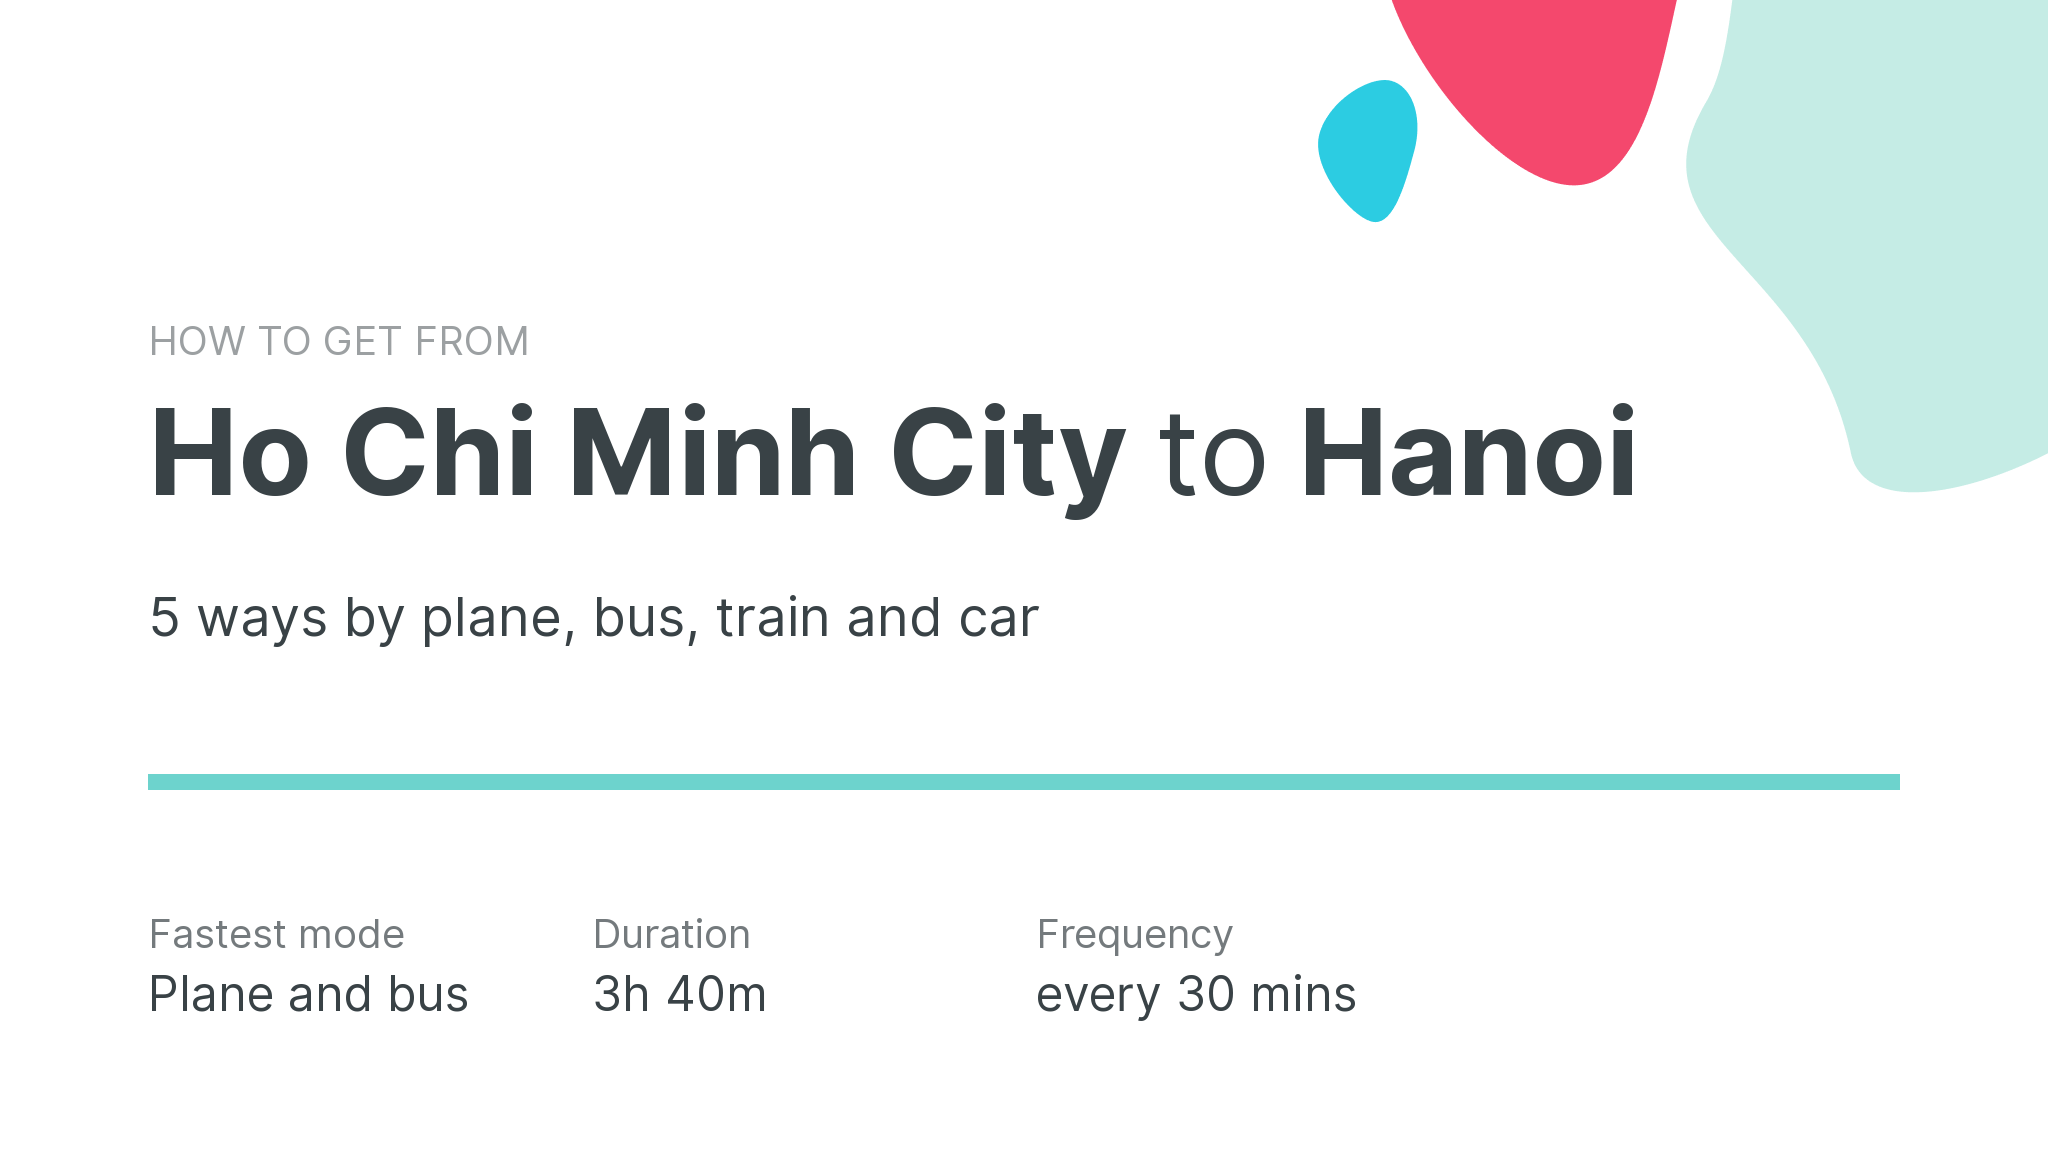 How do I get from Ho Chi Minh City to Hanoi